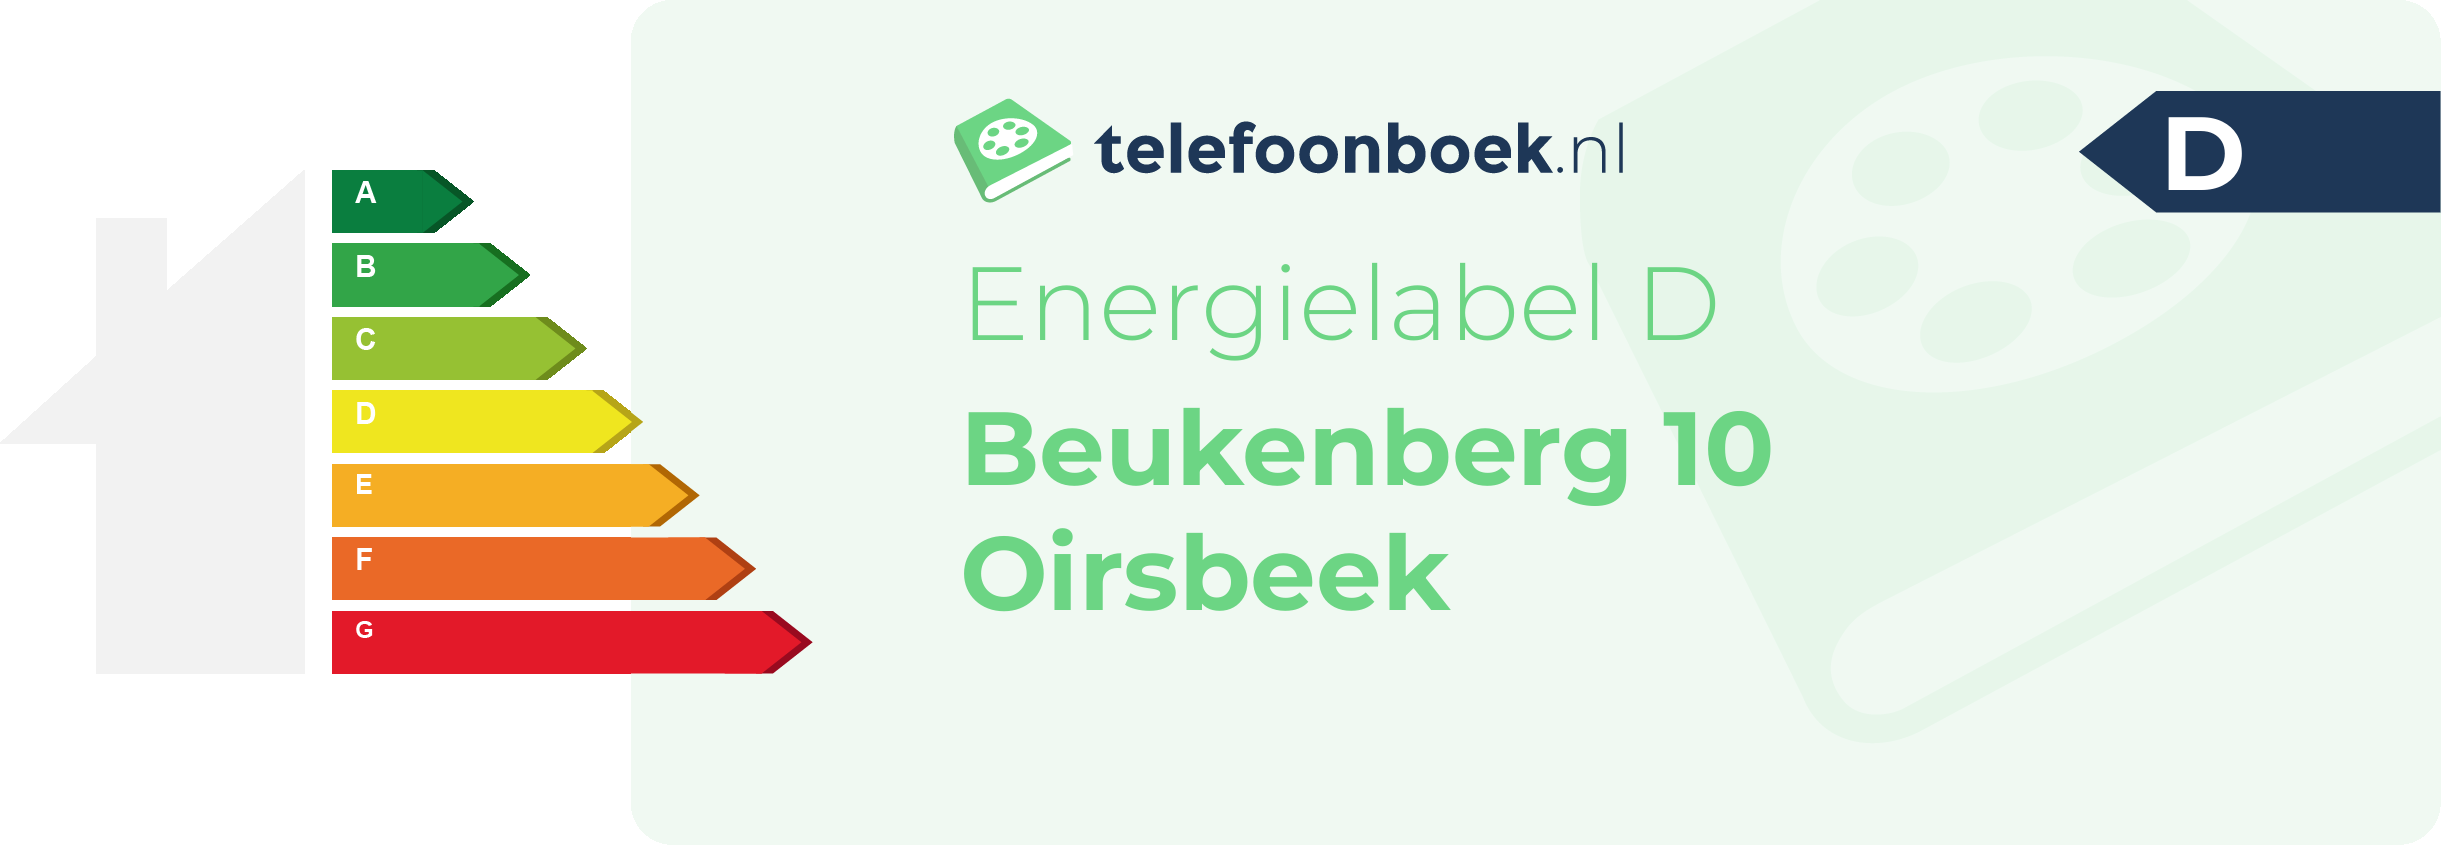 Energielabel Beukenberg 10 Oirsbeek